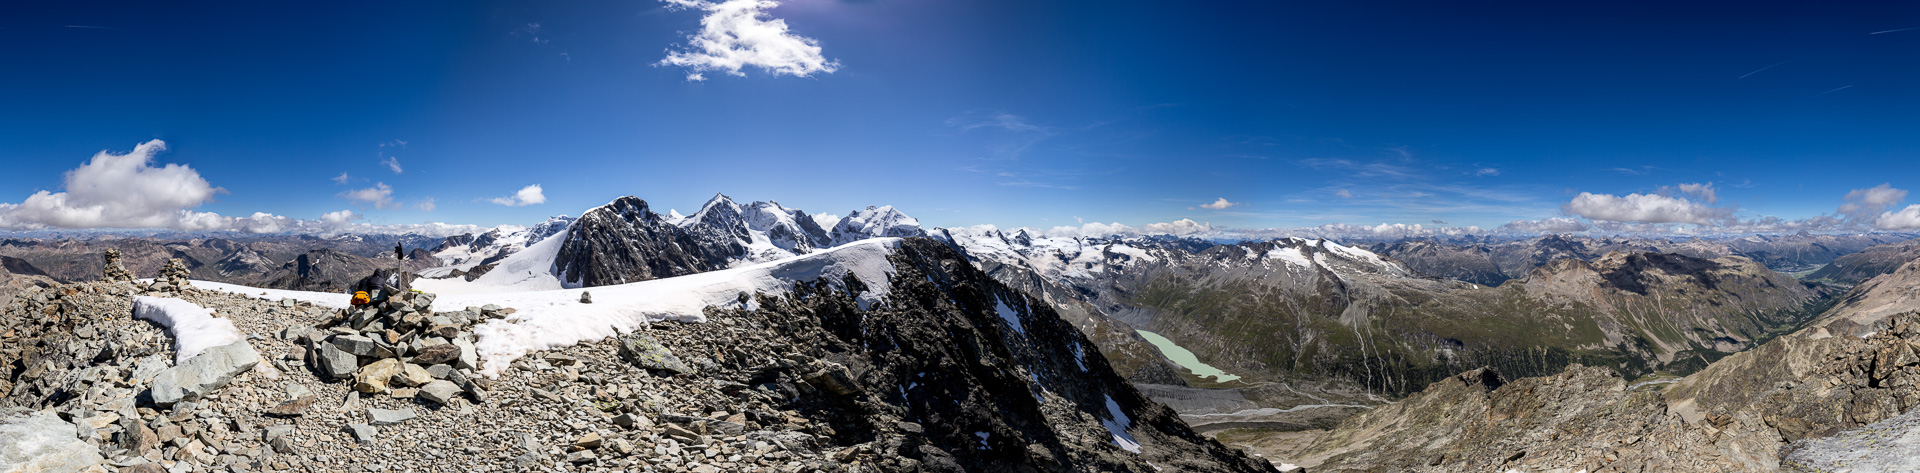 Gipfelpanorama - Rundblick mitten im Festsaal der Alpen